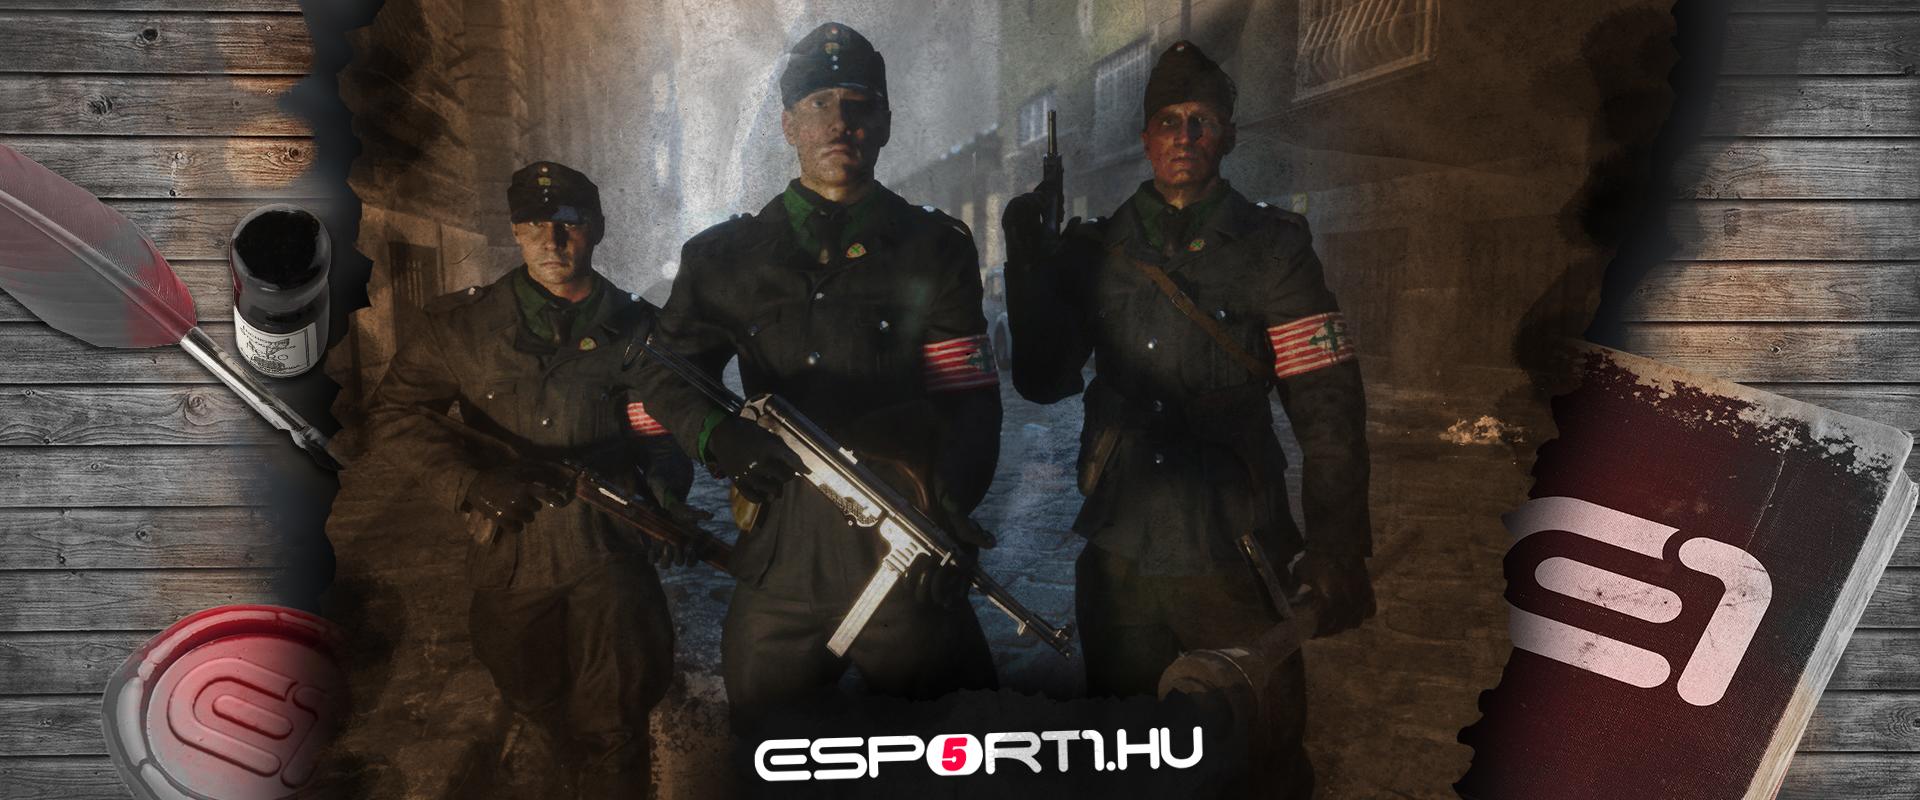 Retro: Magyar fejlesztésű II. világháborús játék Budapesttel a főszerepben